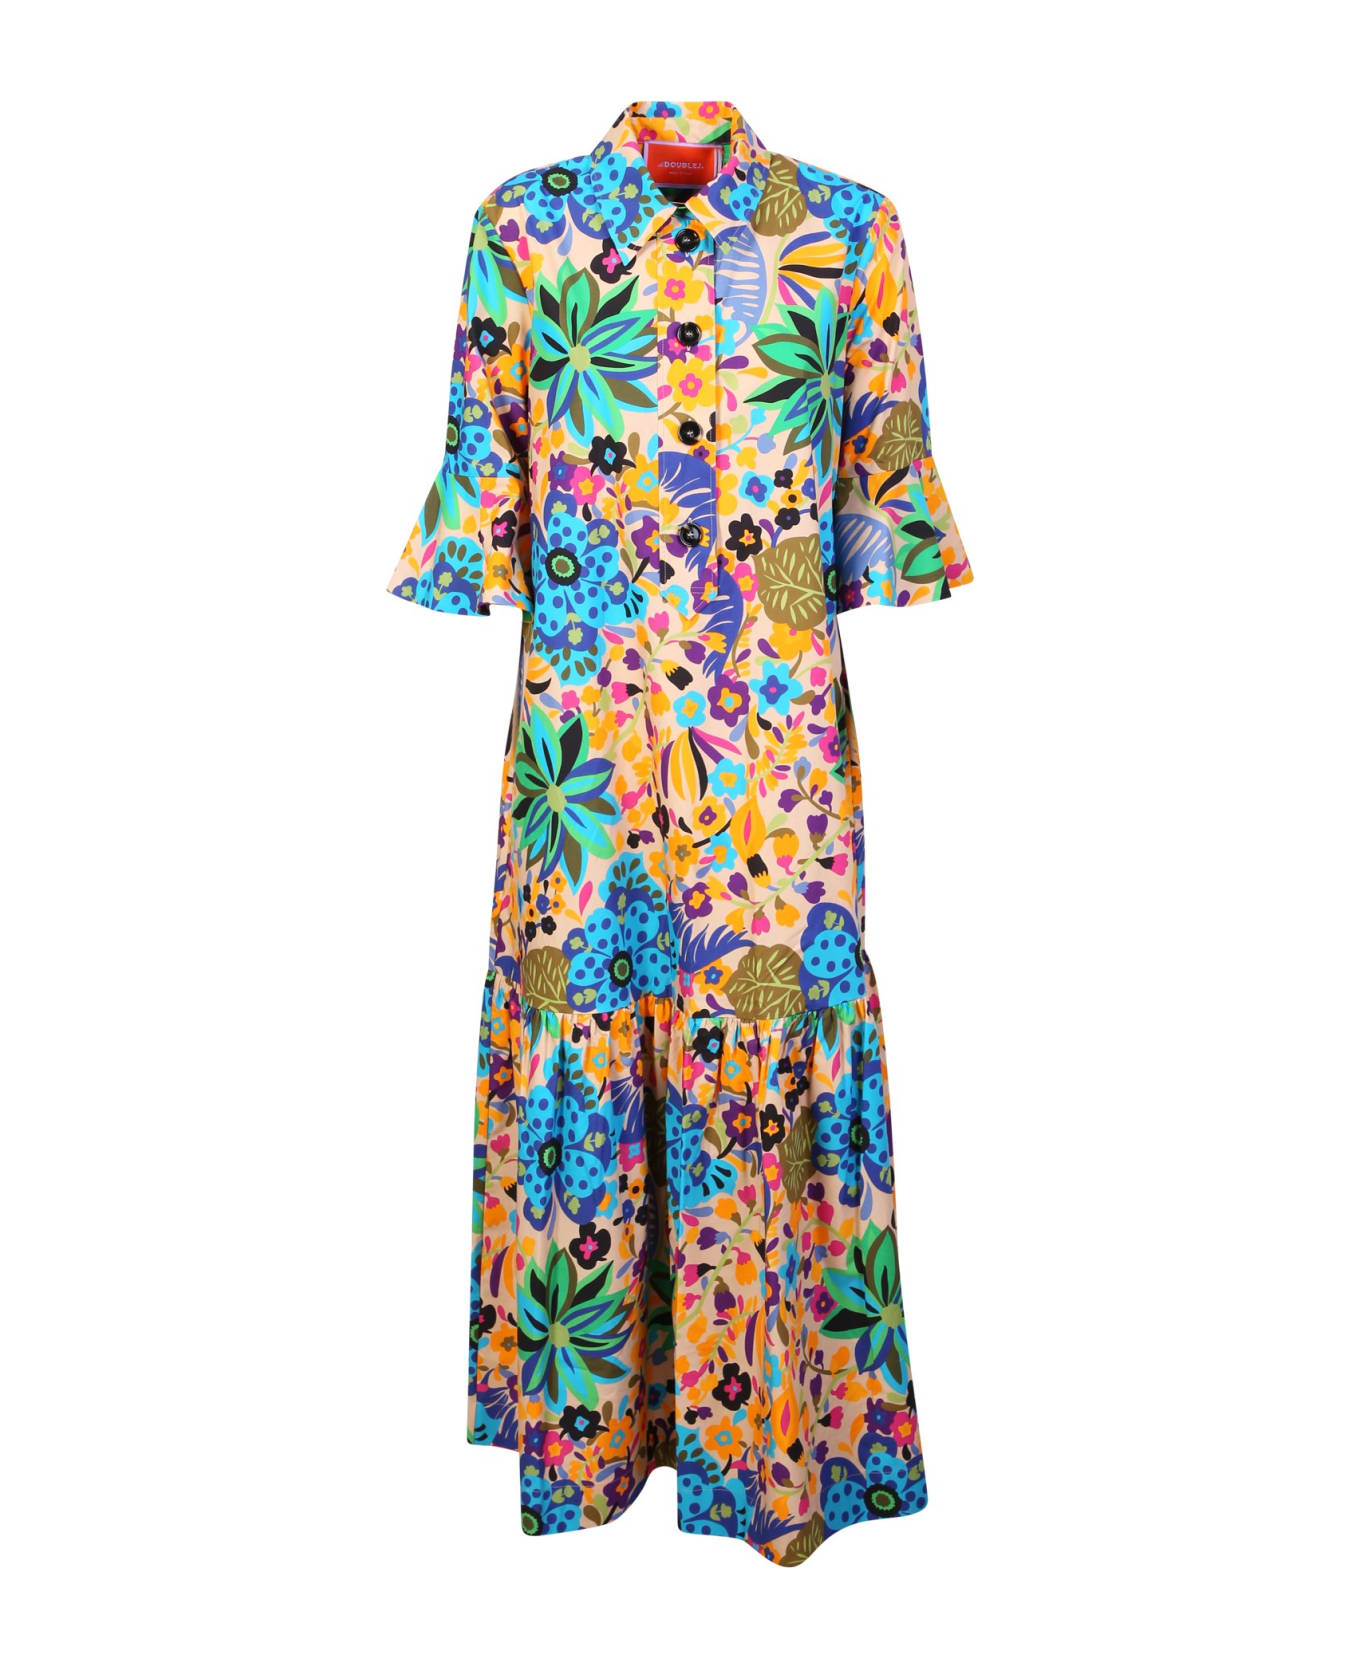 La DoubleJ Artemis Maui Dress - Multi